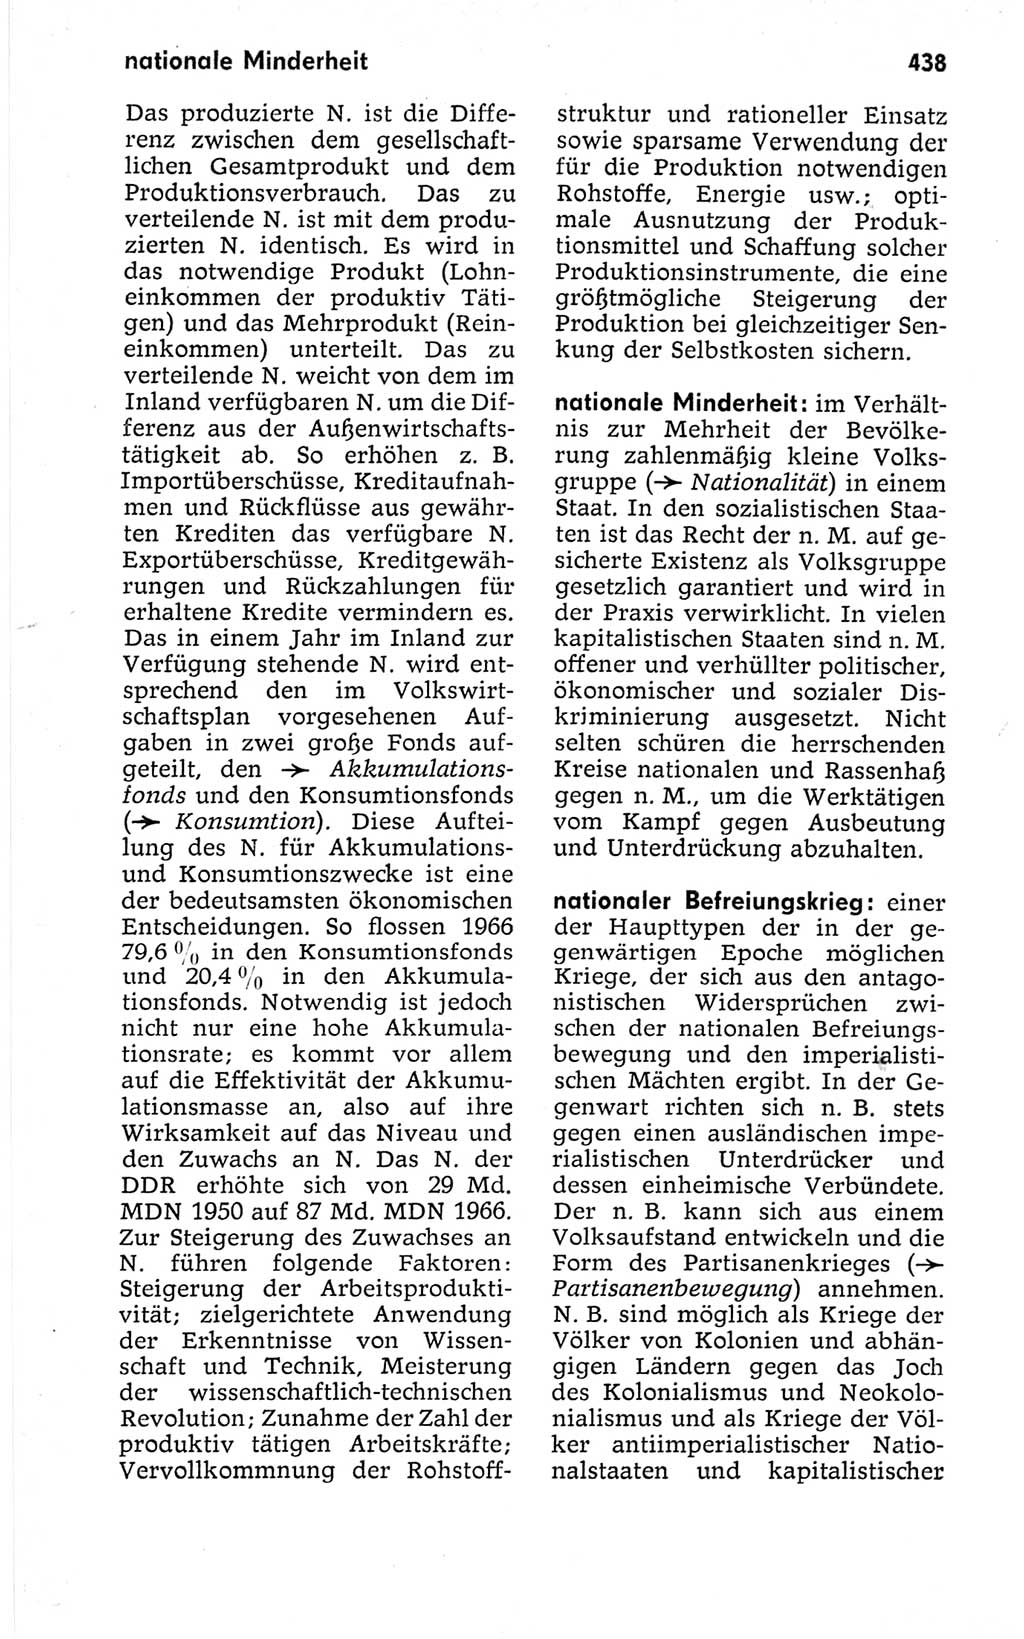 Kleines politisches Wörterbuch [Deutsche Demokratische Republik (DDR)] 1967, Seite 438 (Kl. pol. Wb. DDR 1967, S. 438)